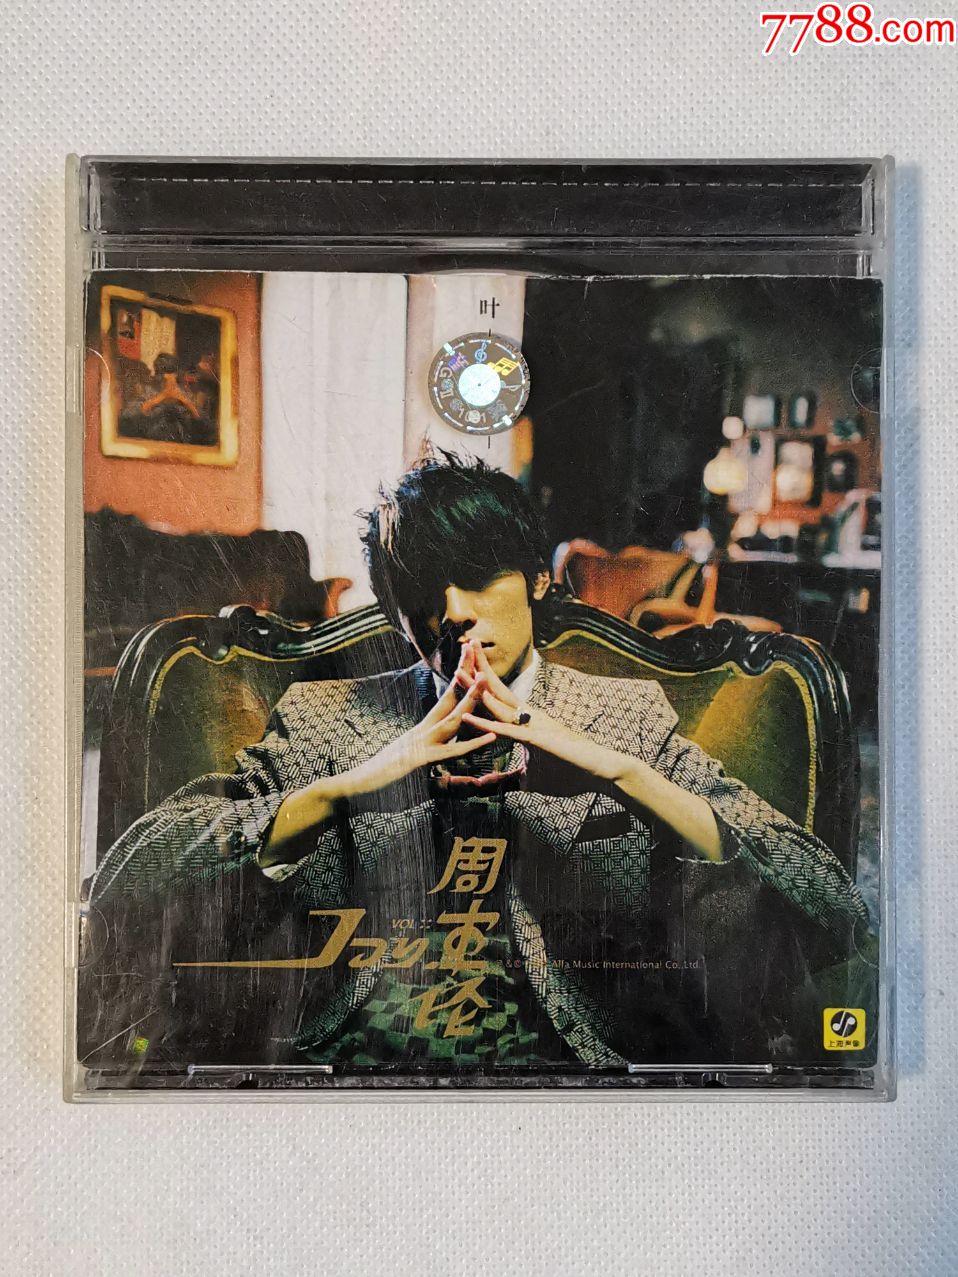 周杰伦专辑《叶惠美》,上海声像正版cd